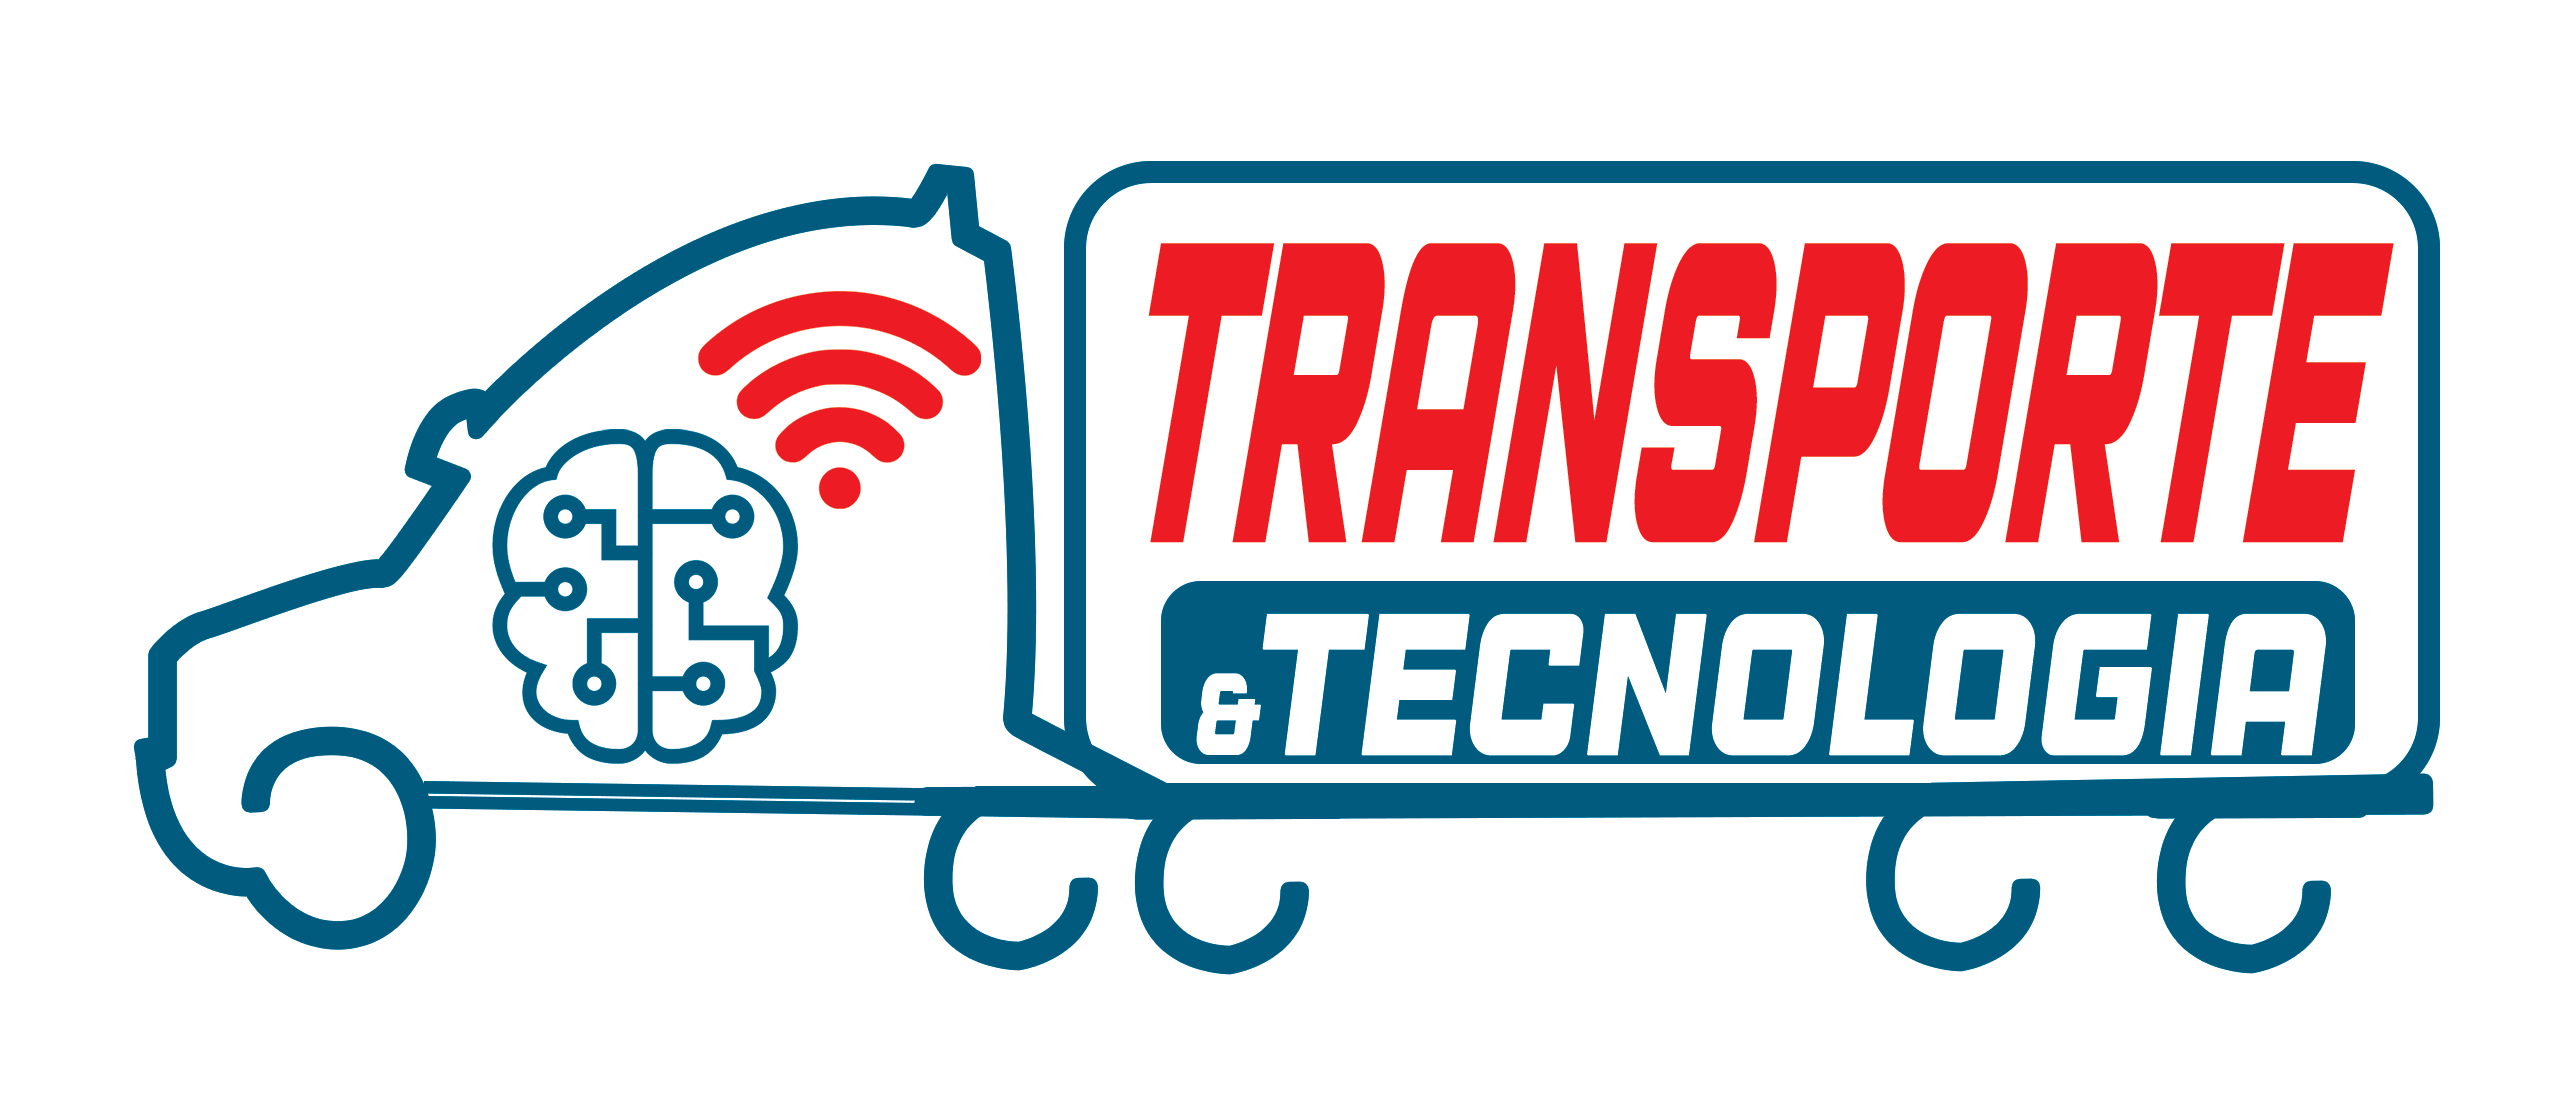 Transporte y Tecnologia